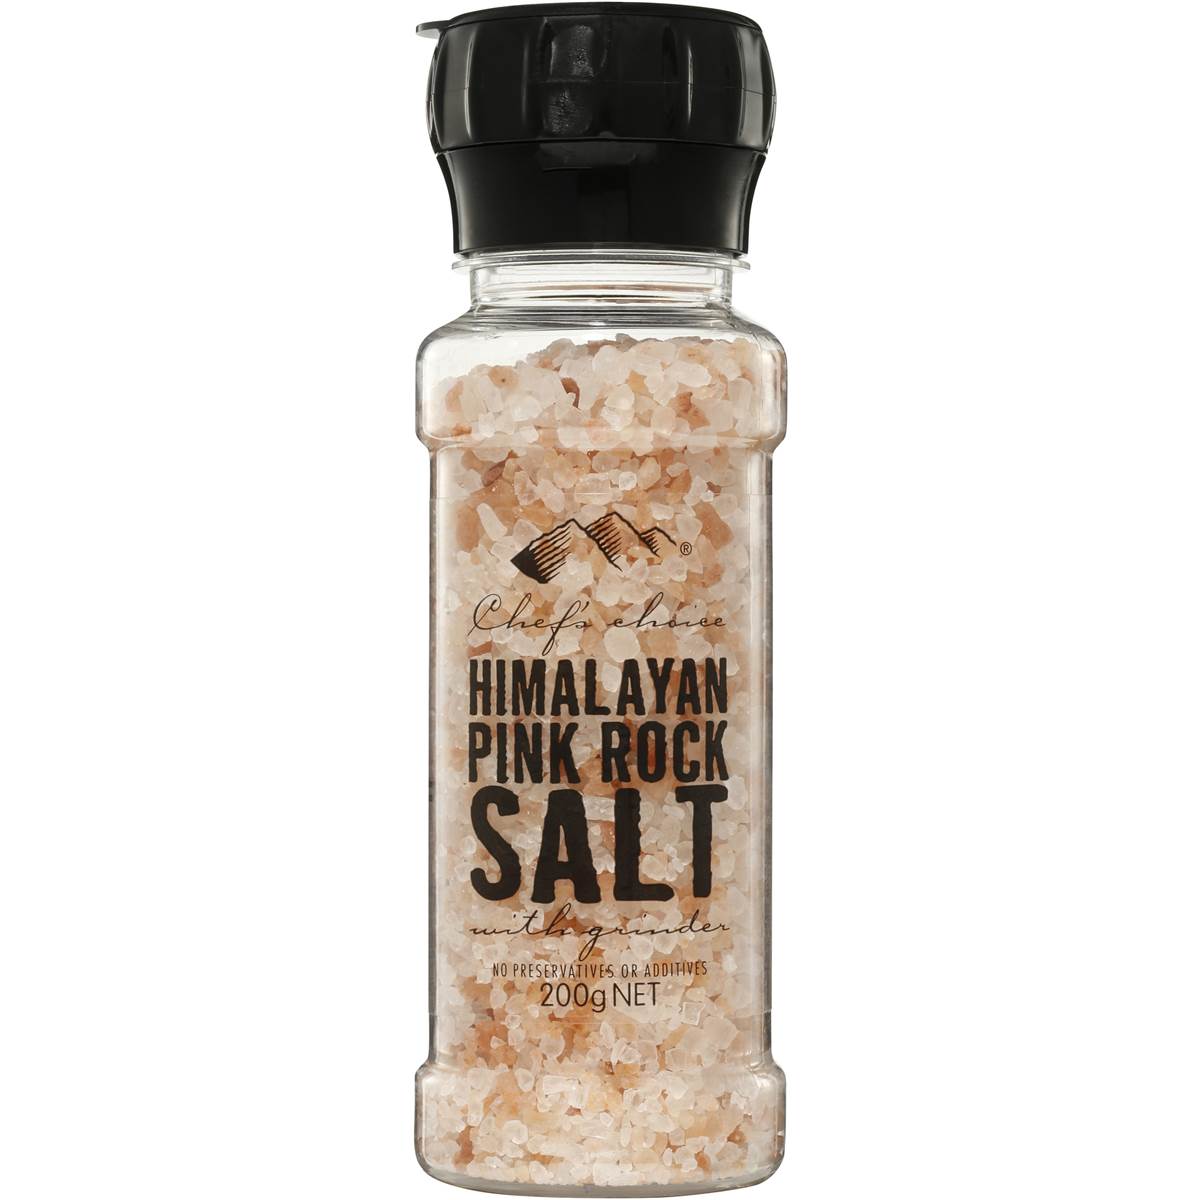 Calories in Chef's Choice Himalayan Pink Rock Salt Grinder